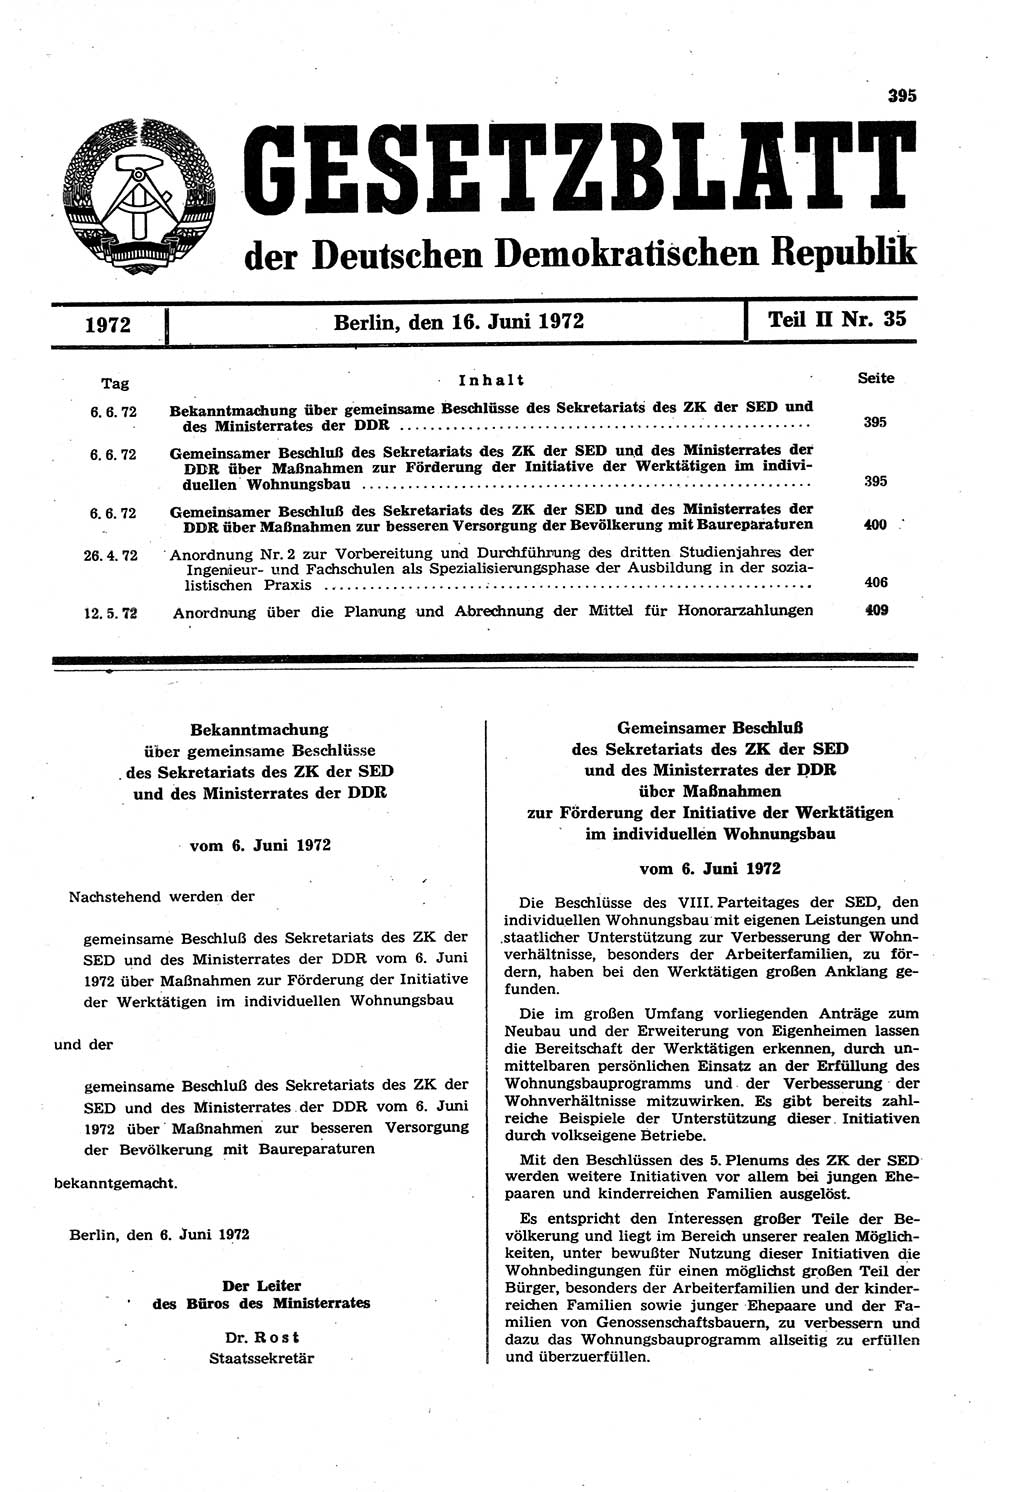 Gesetzblatt (GBl.) der Deutschen Demokratischen Republik (DDR) Teil ⅠⅠ 1972, Seite 395 (GBl. DDR ⅠⅠ 1972, S. 395)